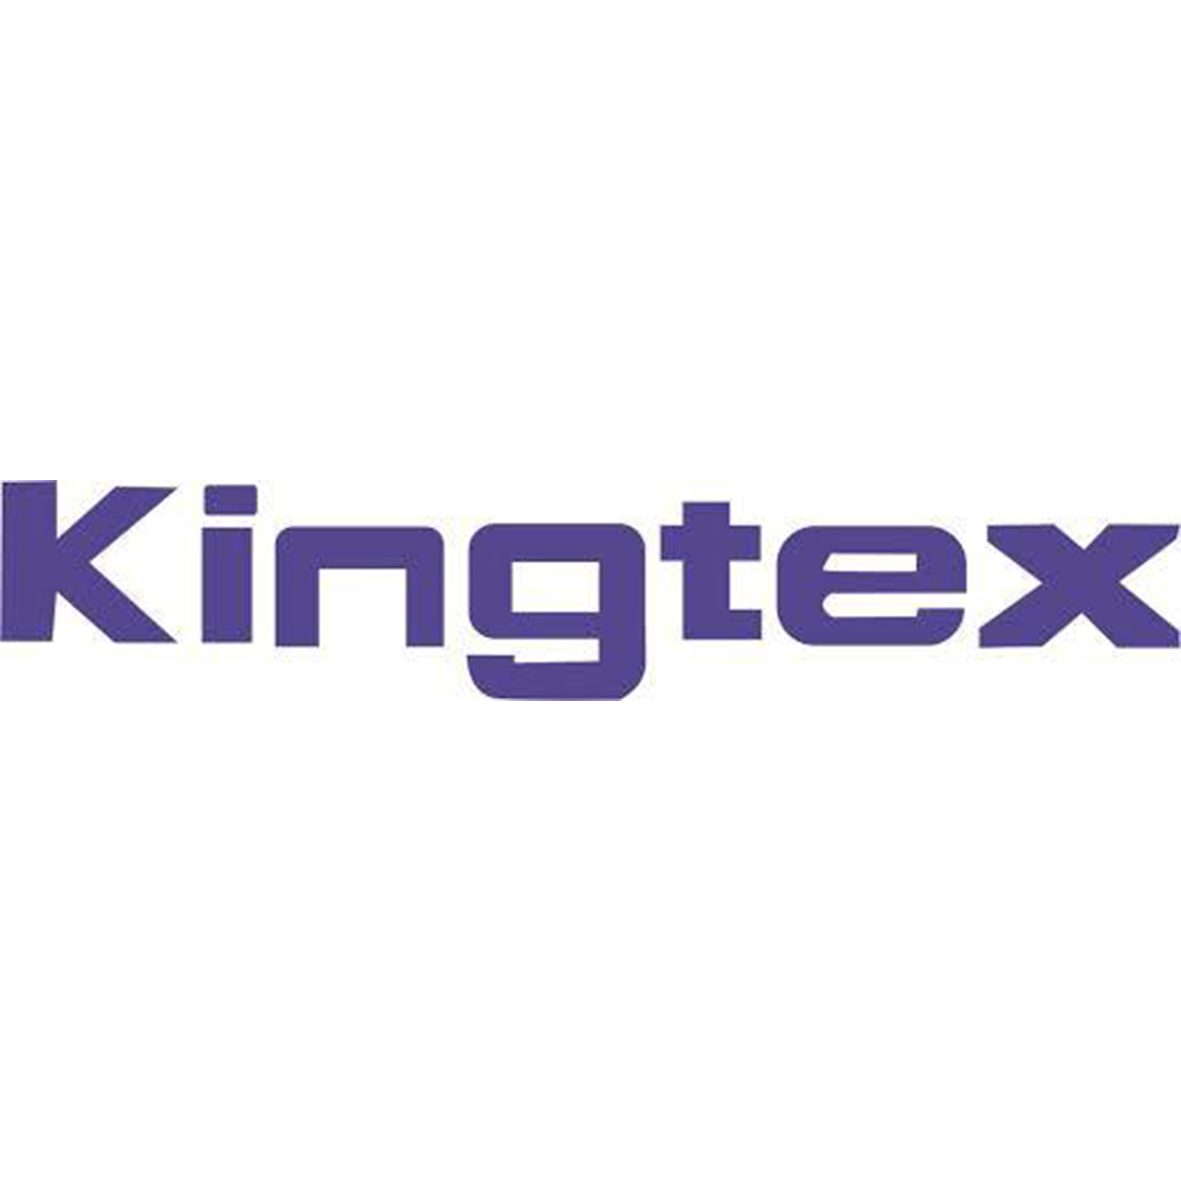 Kingtex